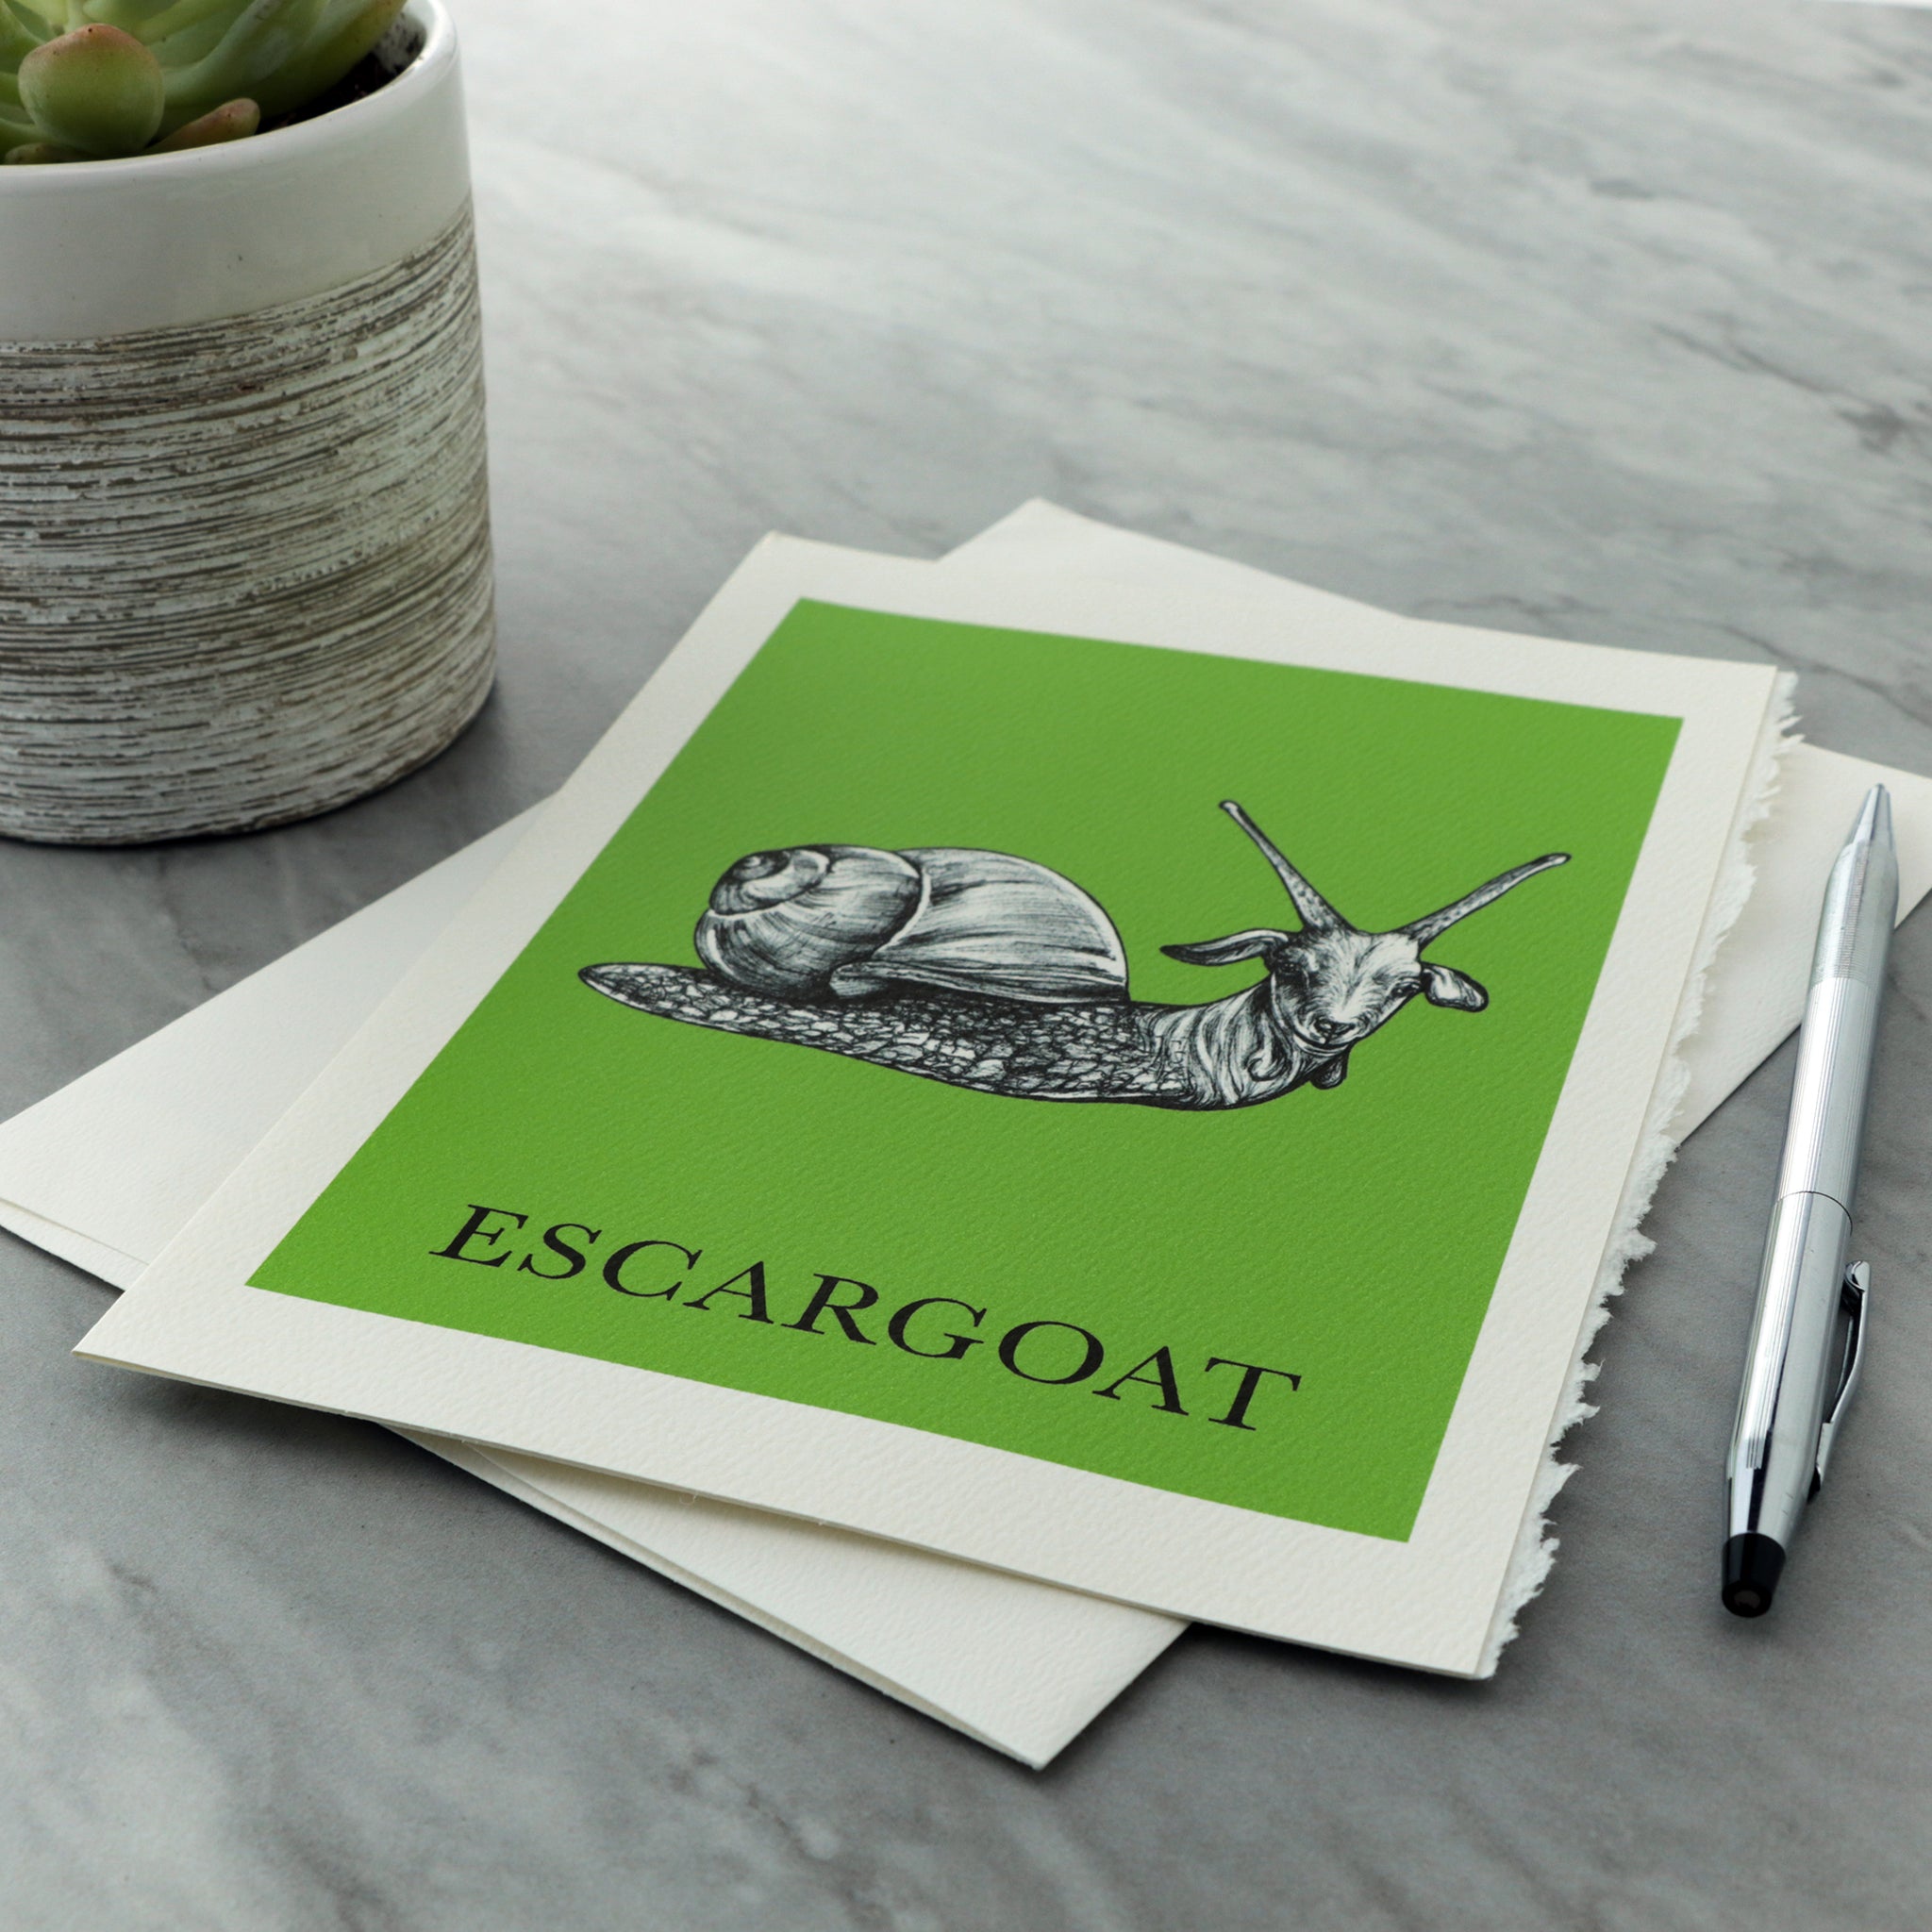 Escargoat 5x7" Greeting Card